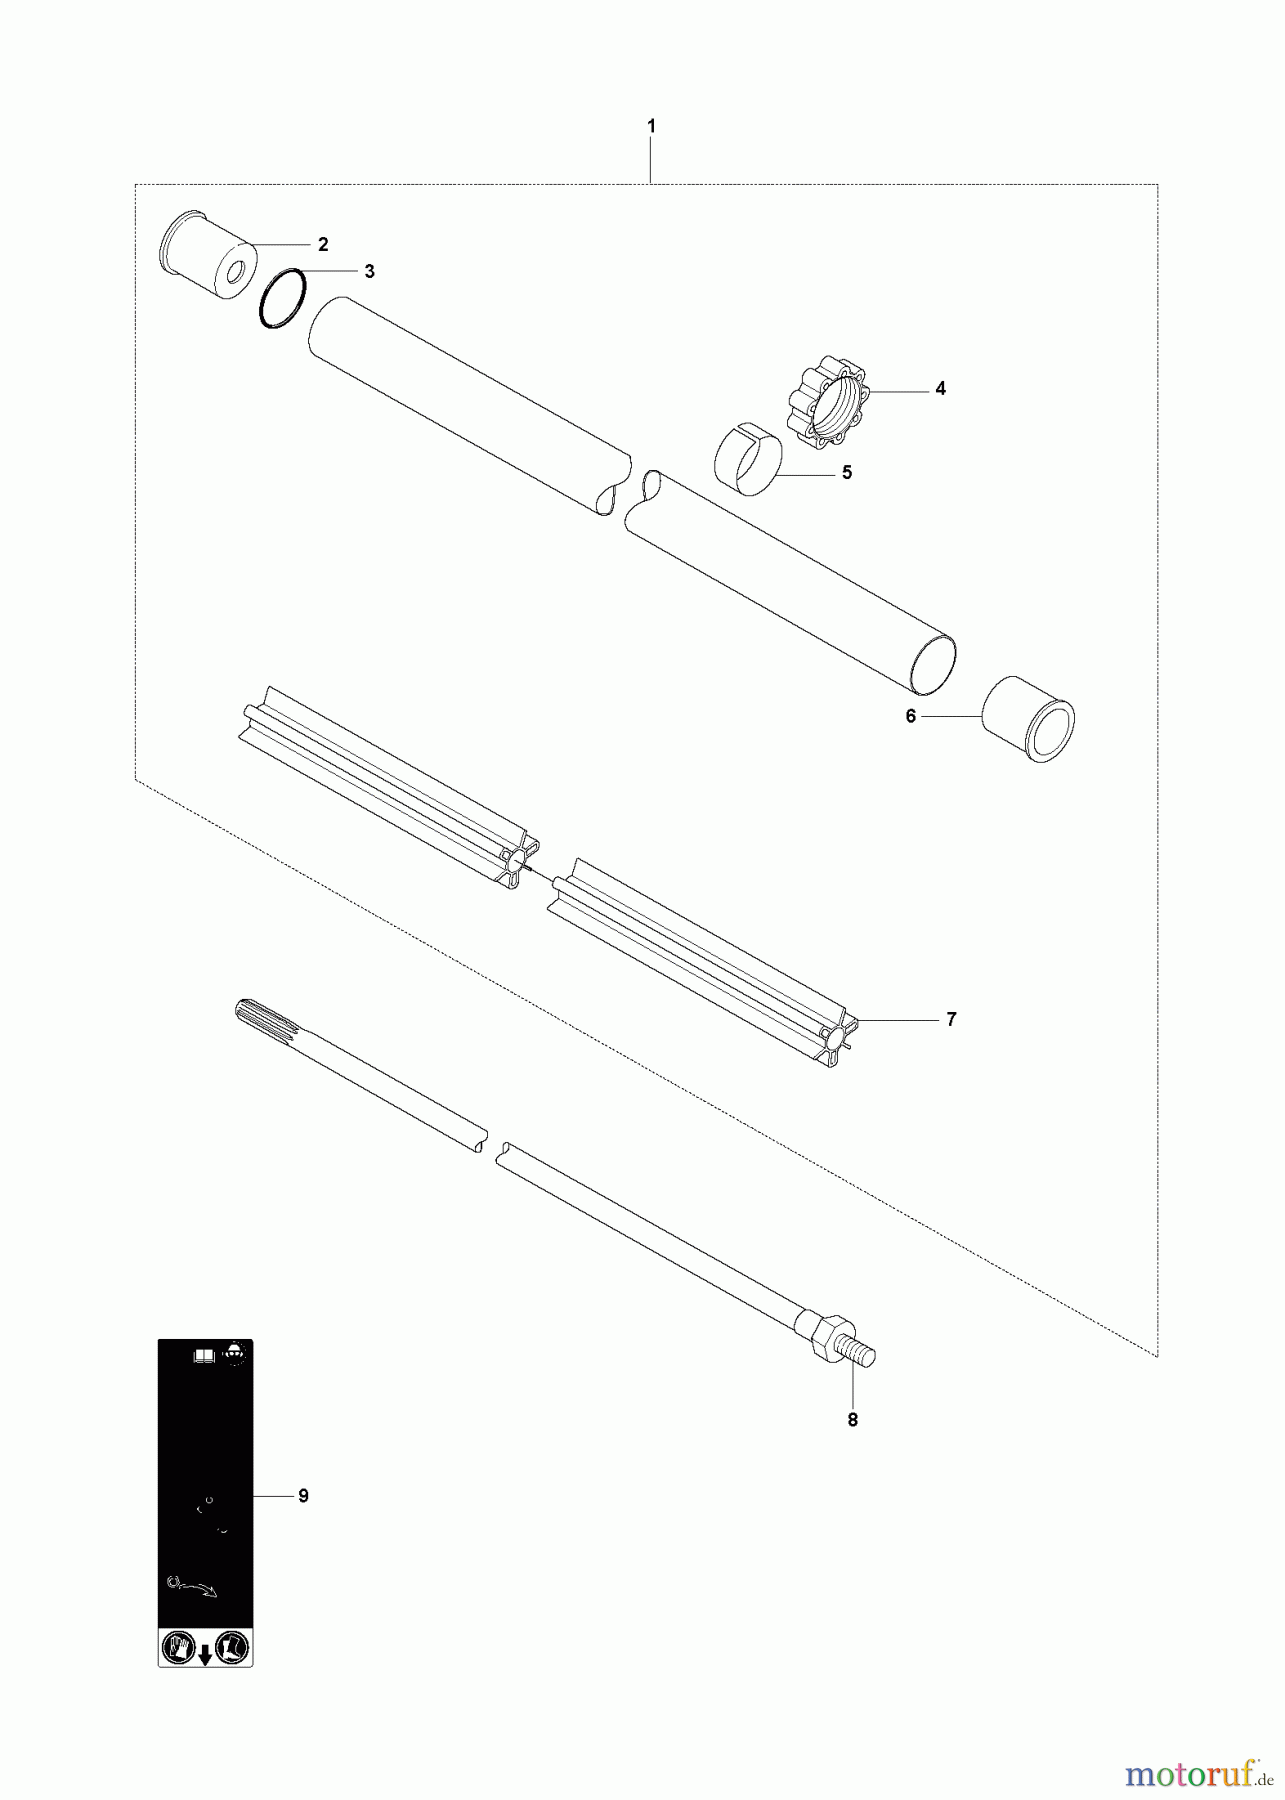  Jonsered Motorsensen, Trimmer FC2145 - Jonsered String/Brush Trimmer (2008-05) SHAFT